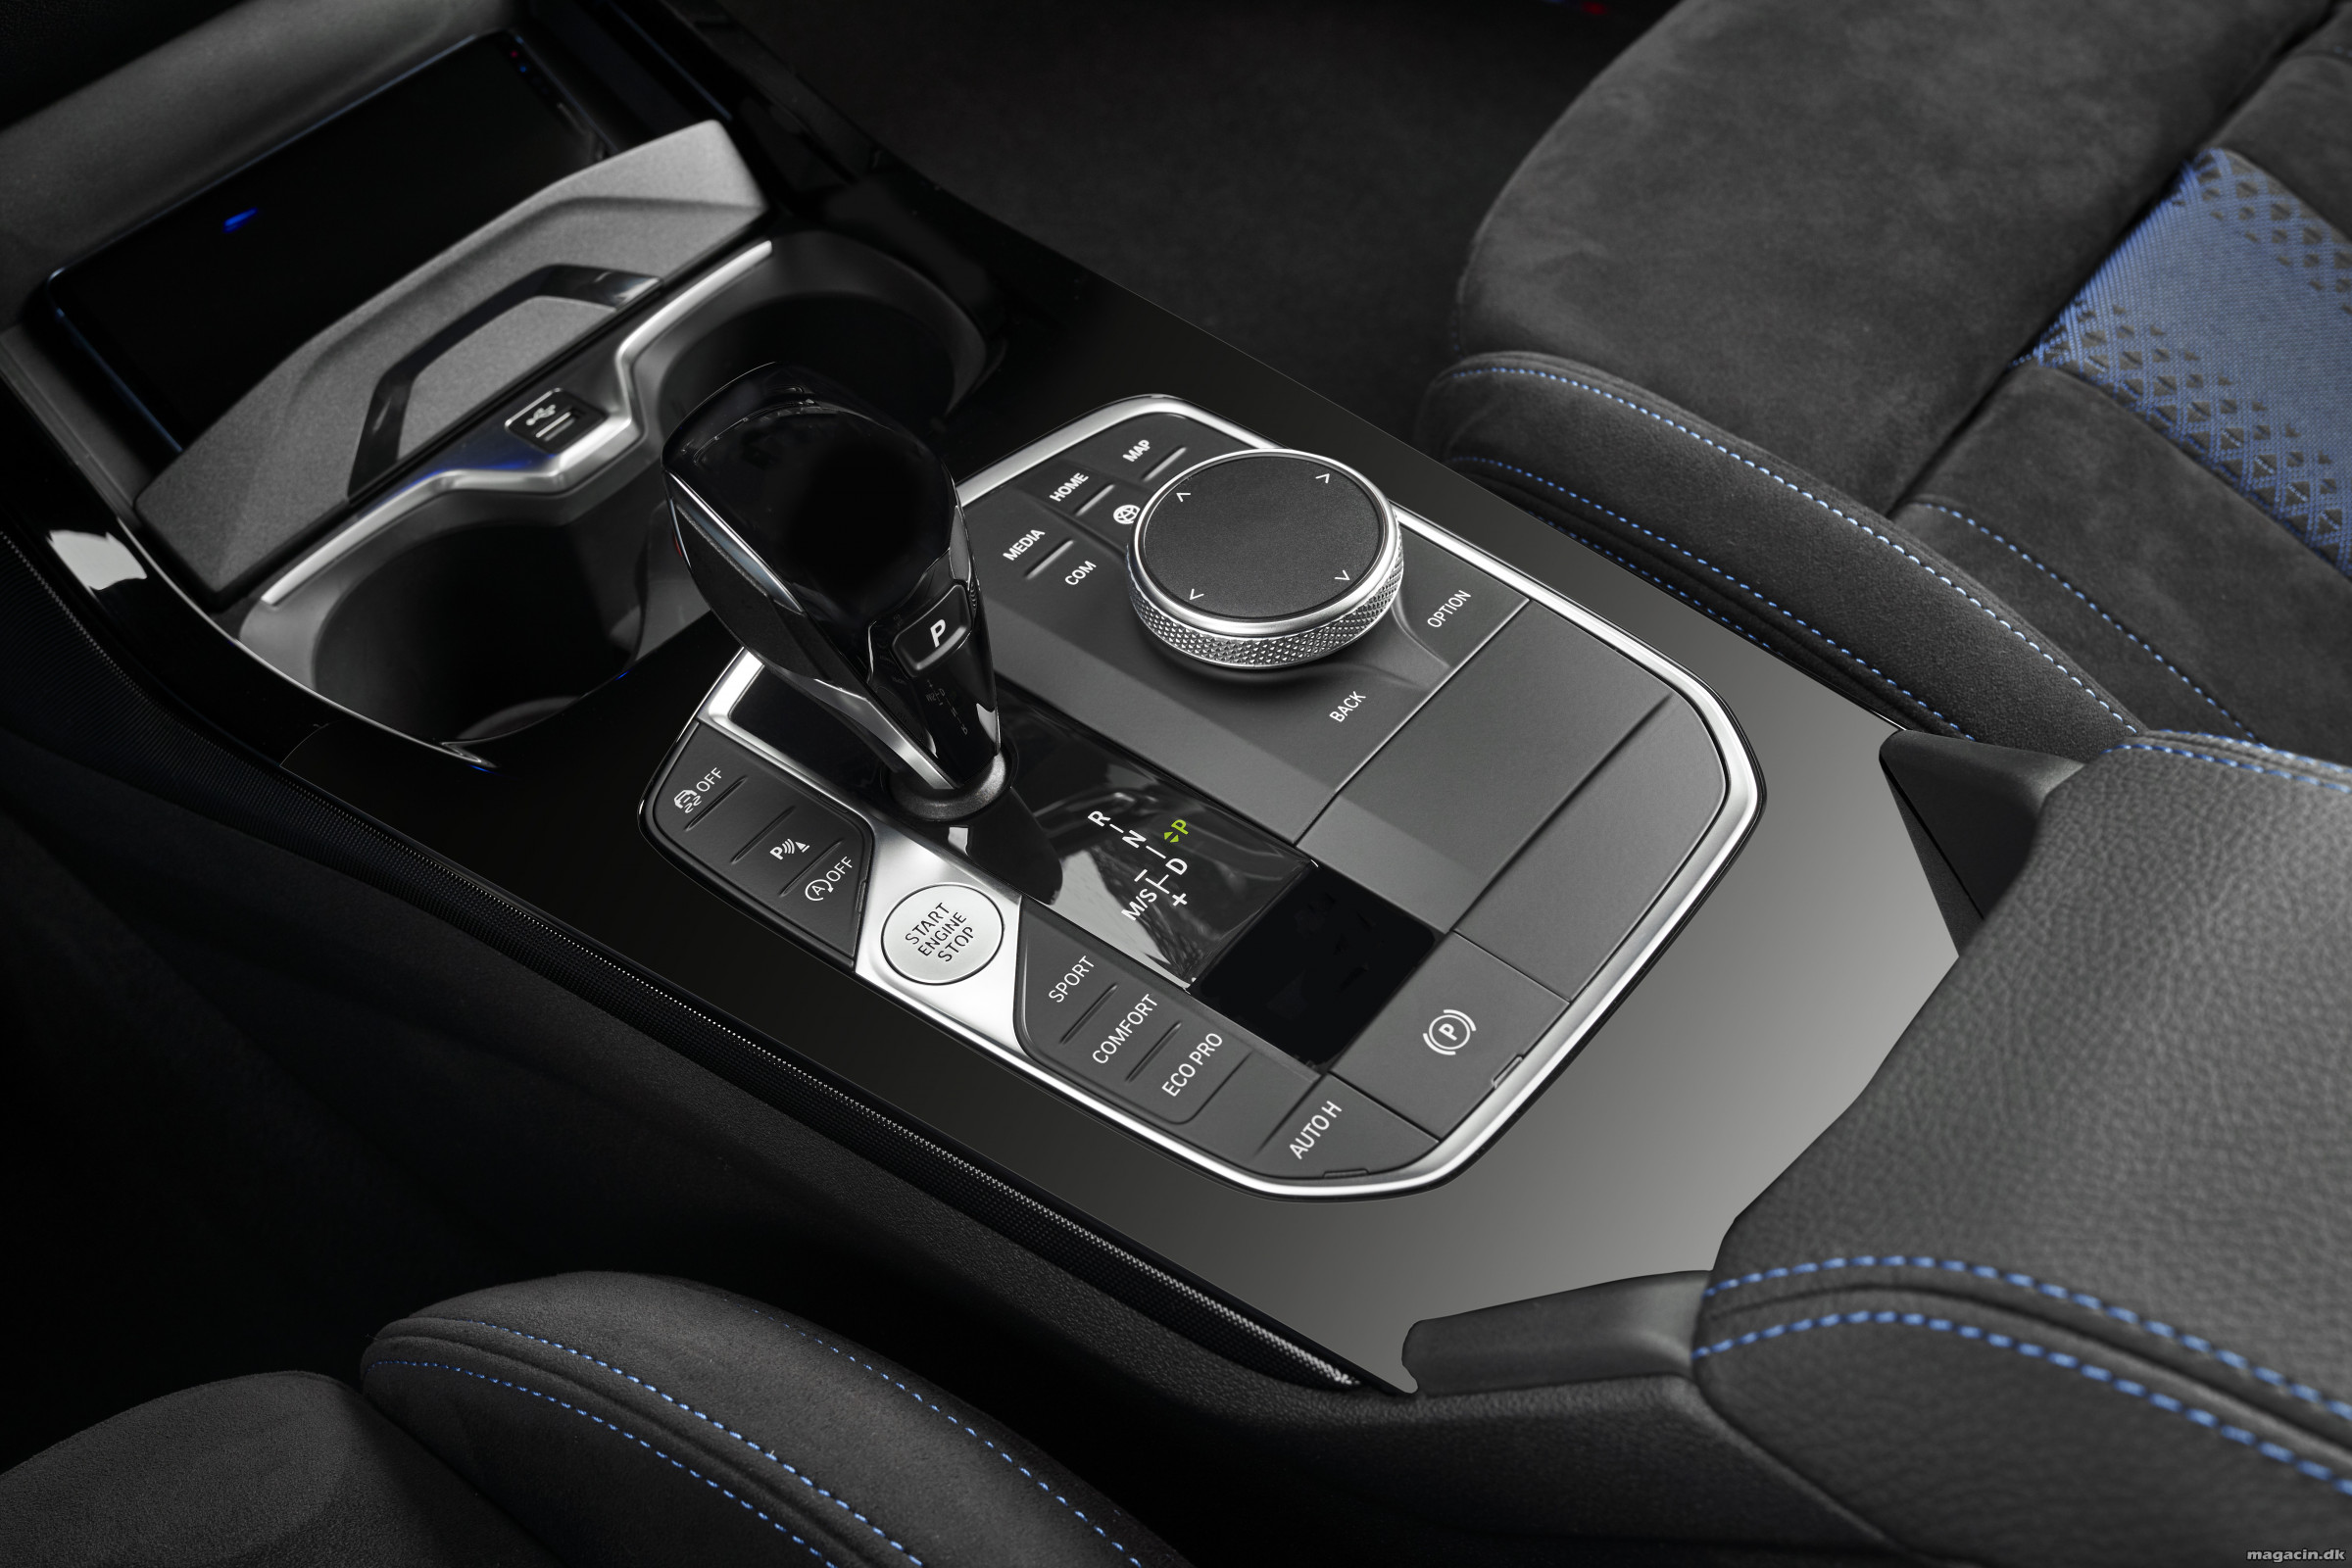 Den nye BMW 1-serie: Kompakt køreglæde